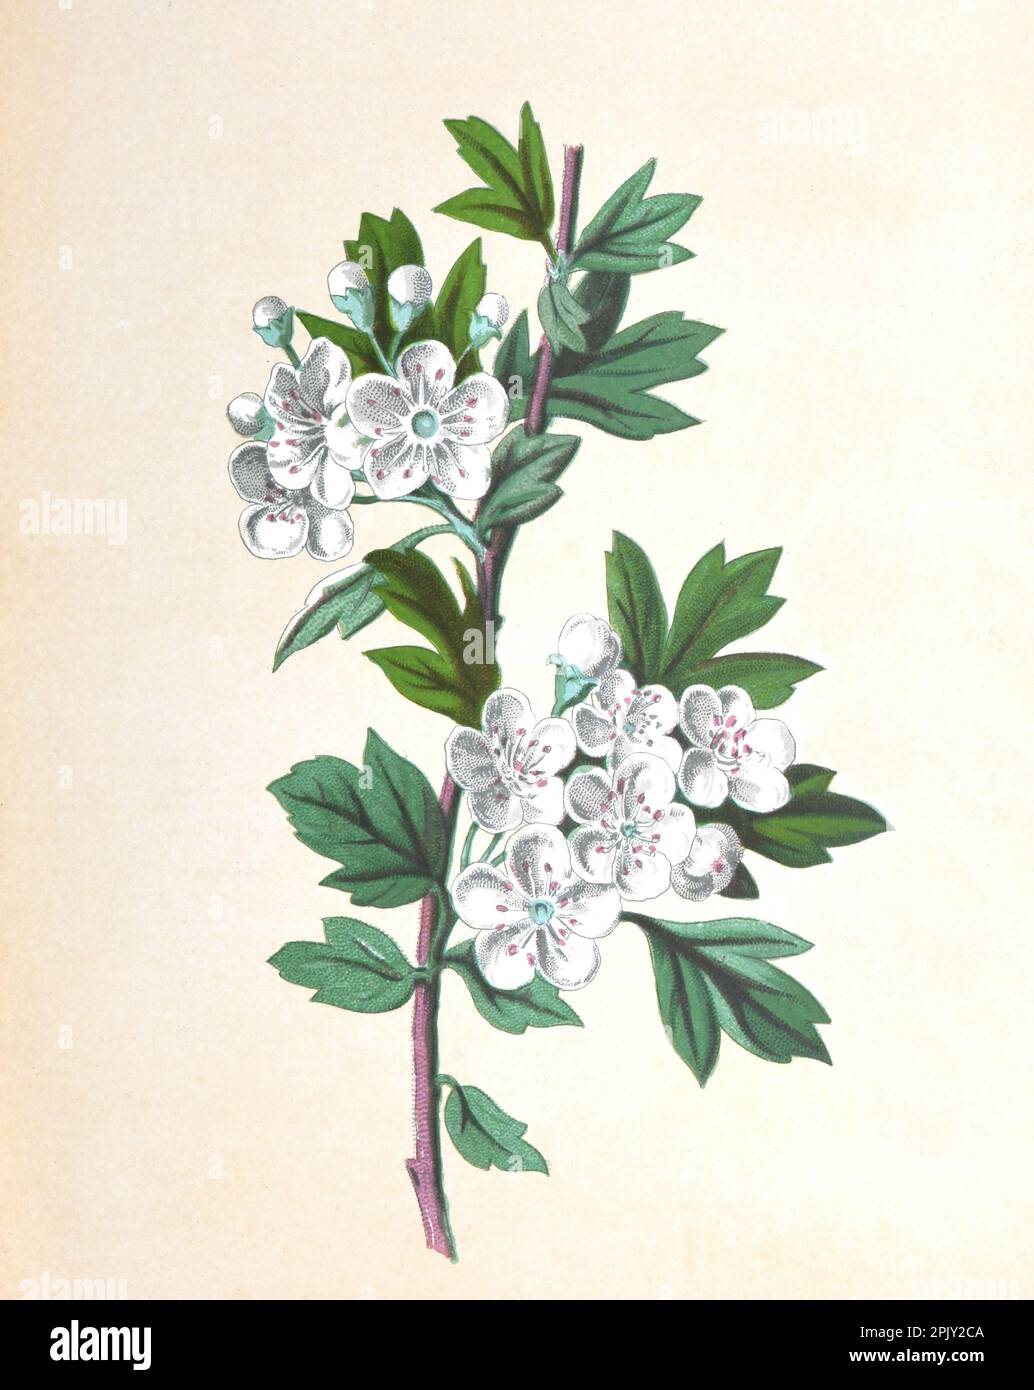 Hawthorn oder Crateagus Blume. (Treibdorn oder Dornapfel) Maibaum, whitehorn oder Heubeere. Antikes Bild von handgezeichneten Blumen. Blumendarstellung. Stockfoto